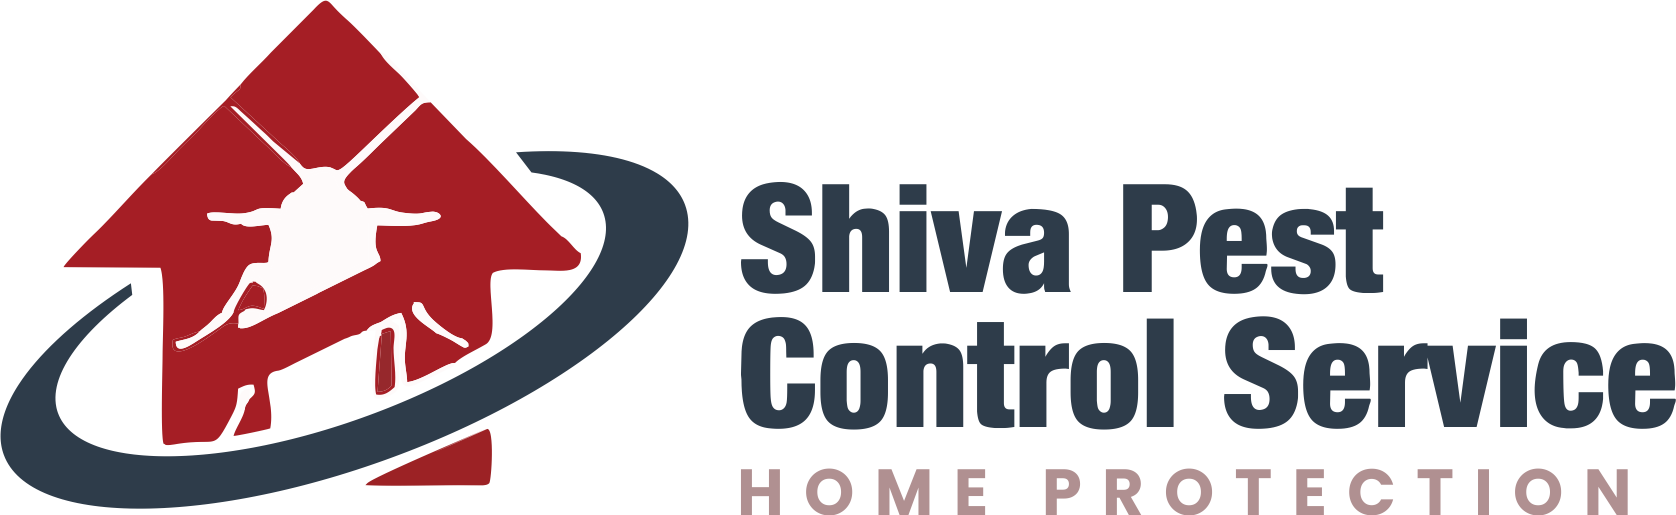 Shiva Pest Control Service